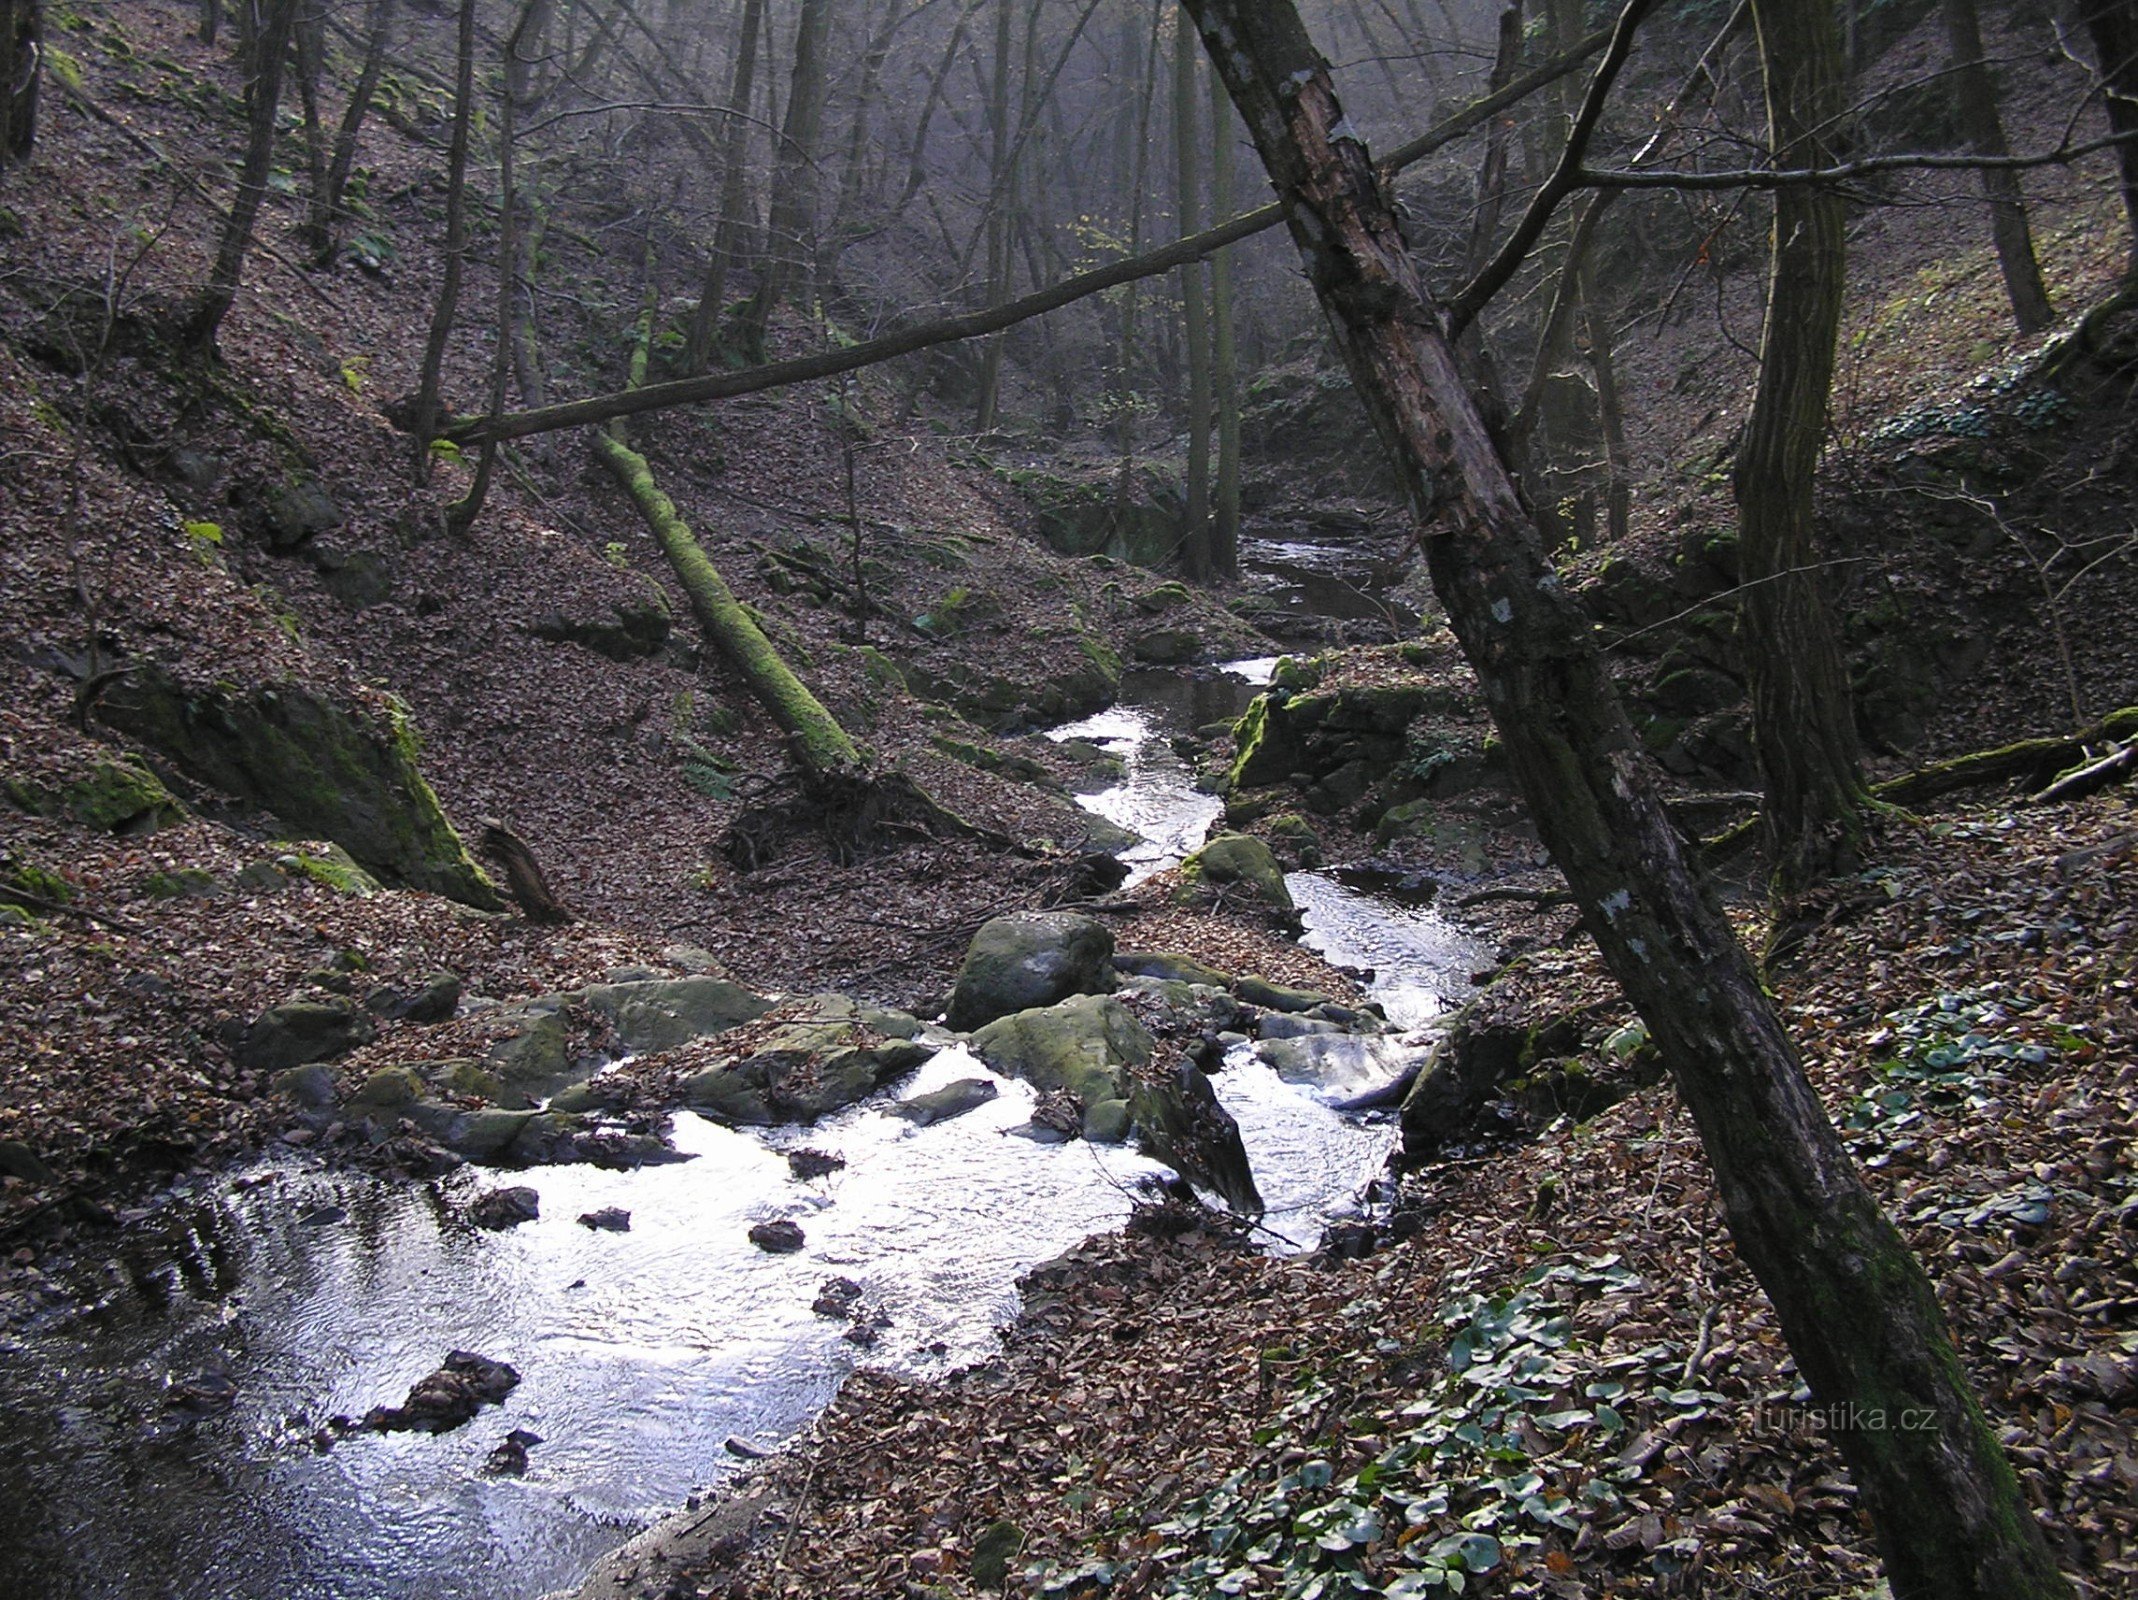 Mohelnička - nature reserve